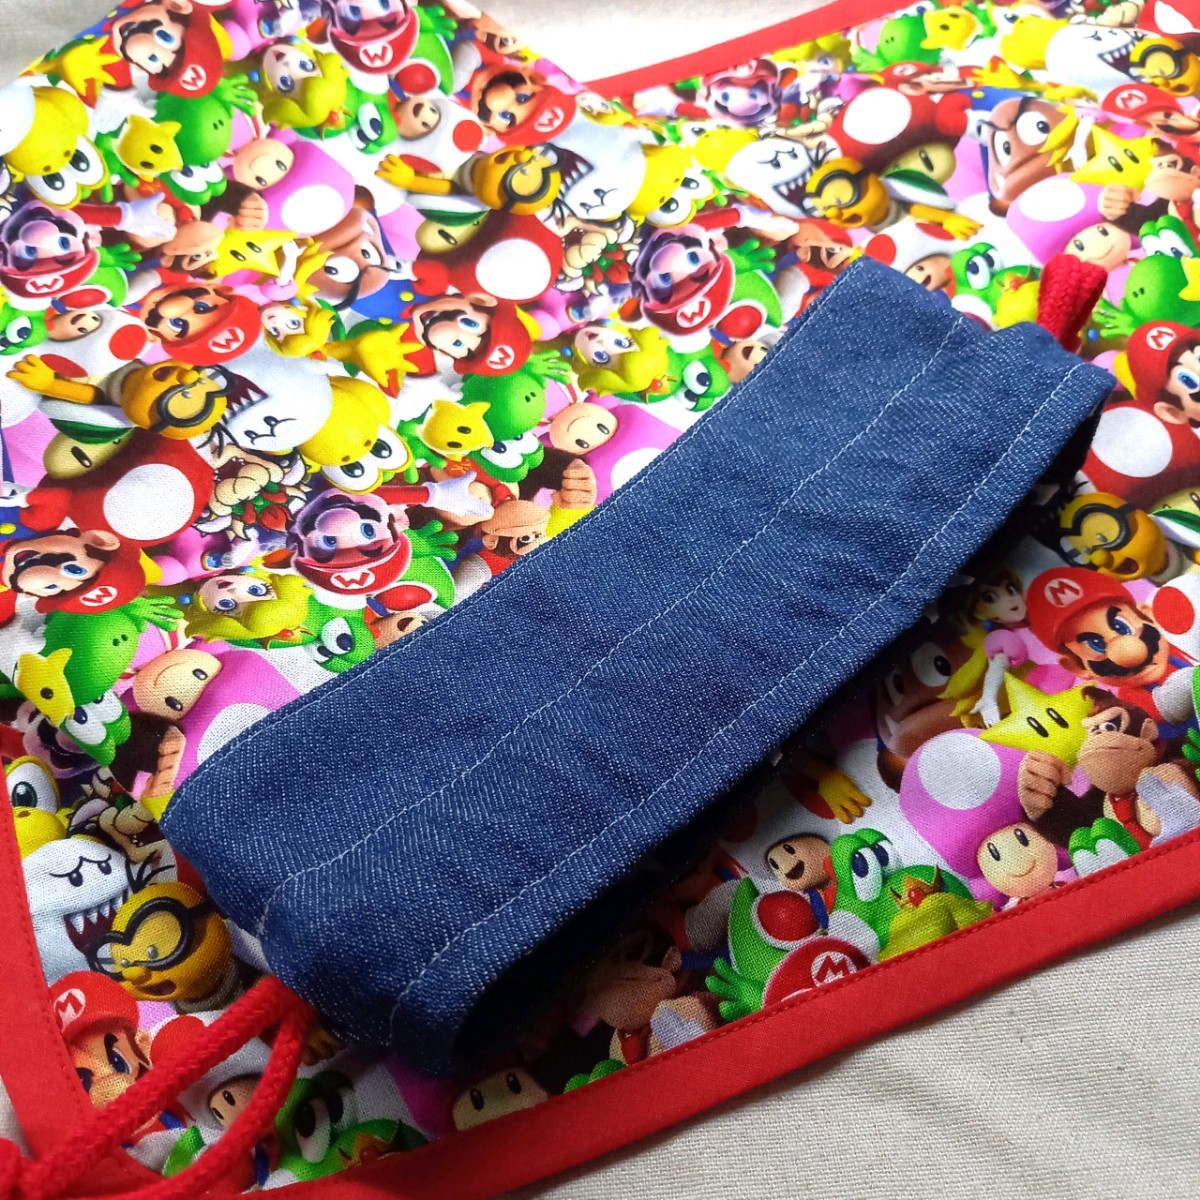 手作り☆巾着袋20×25&ランチョンマット25×35セット☆スーパーマリオ☆総柄&デニム